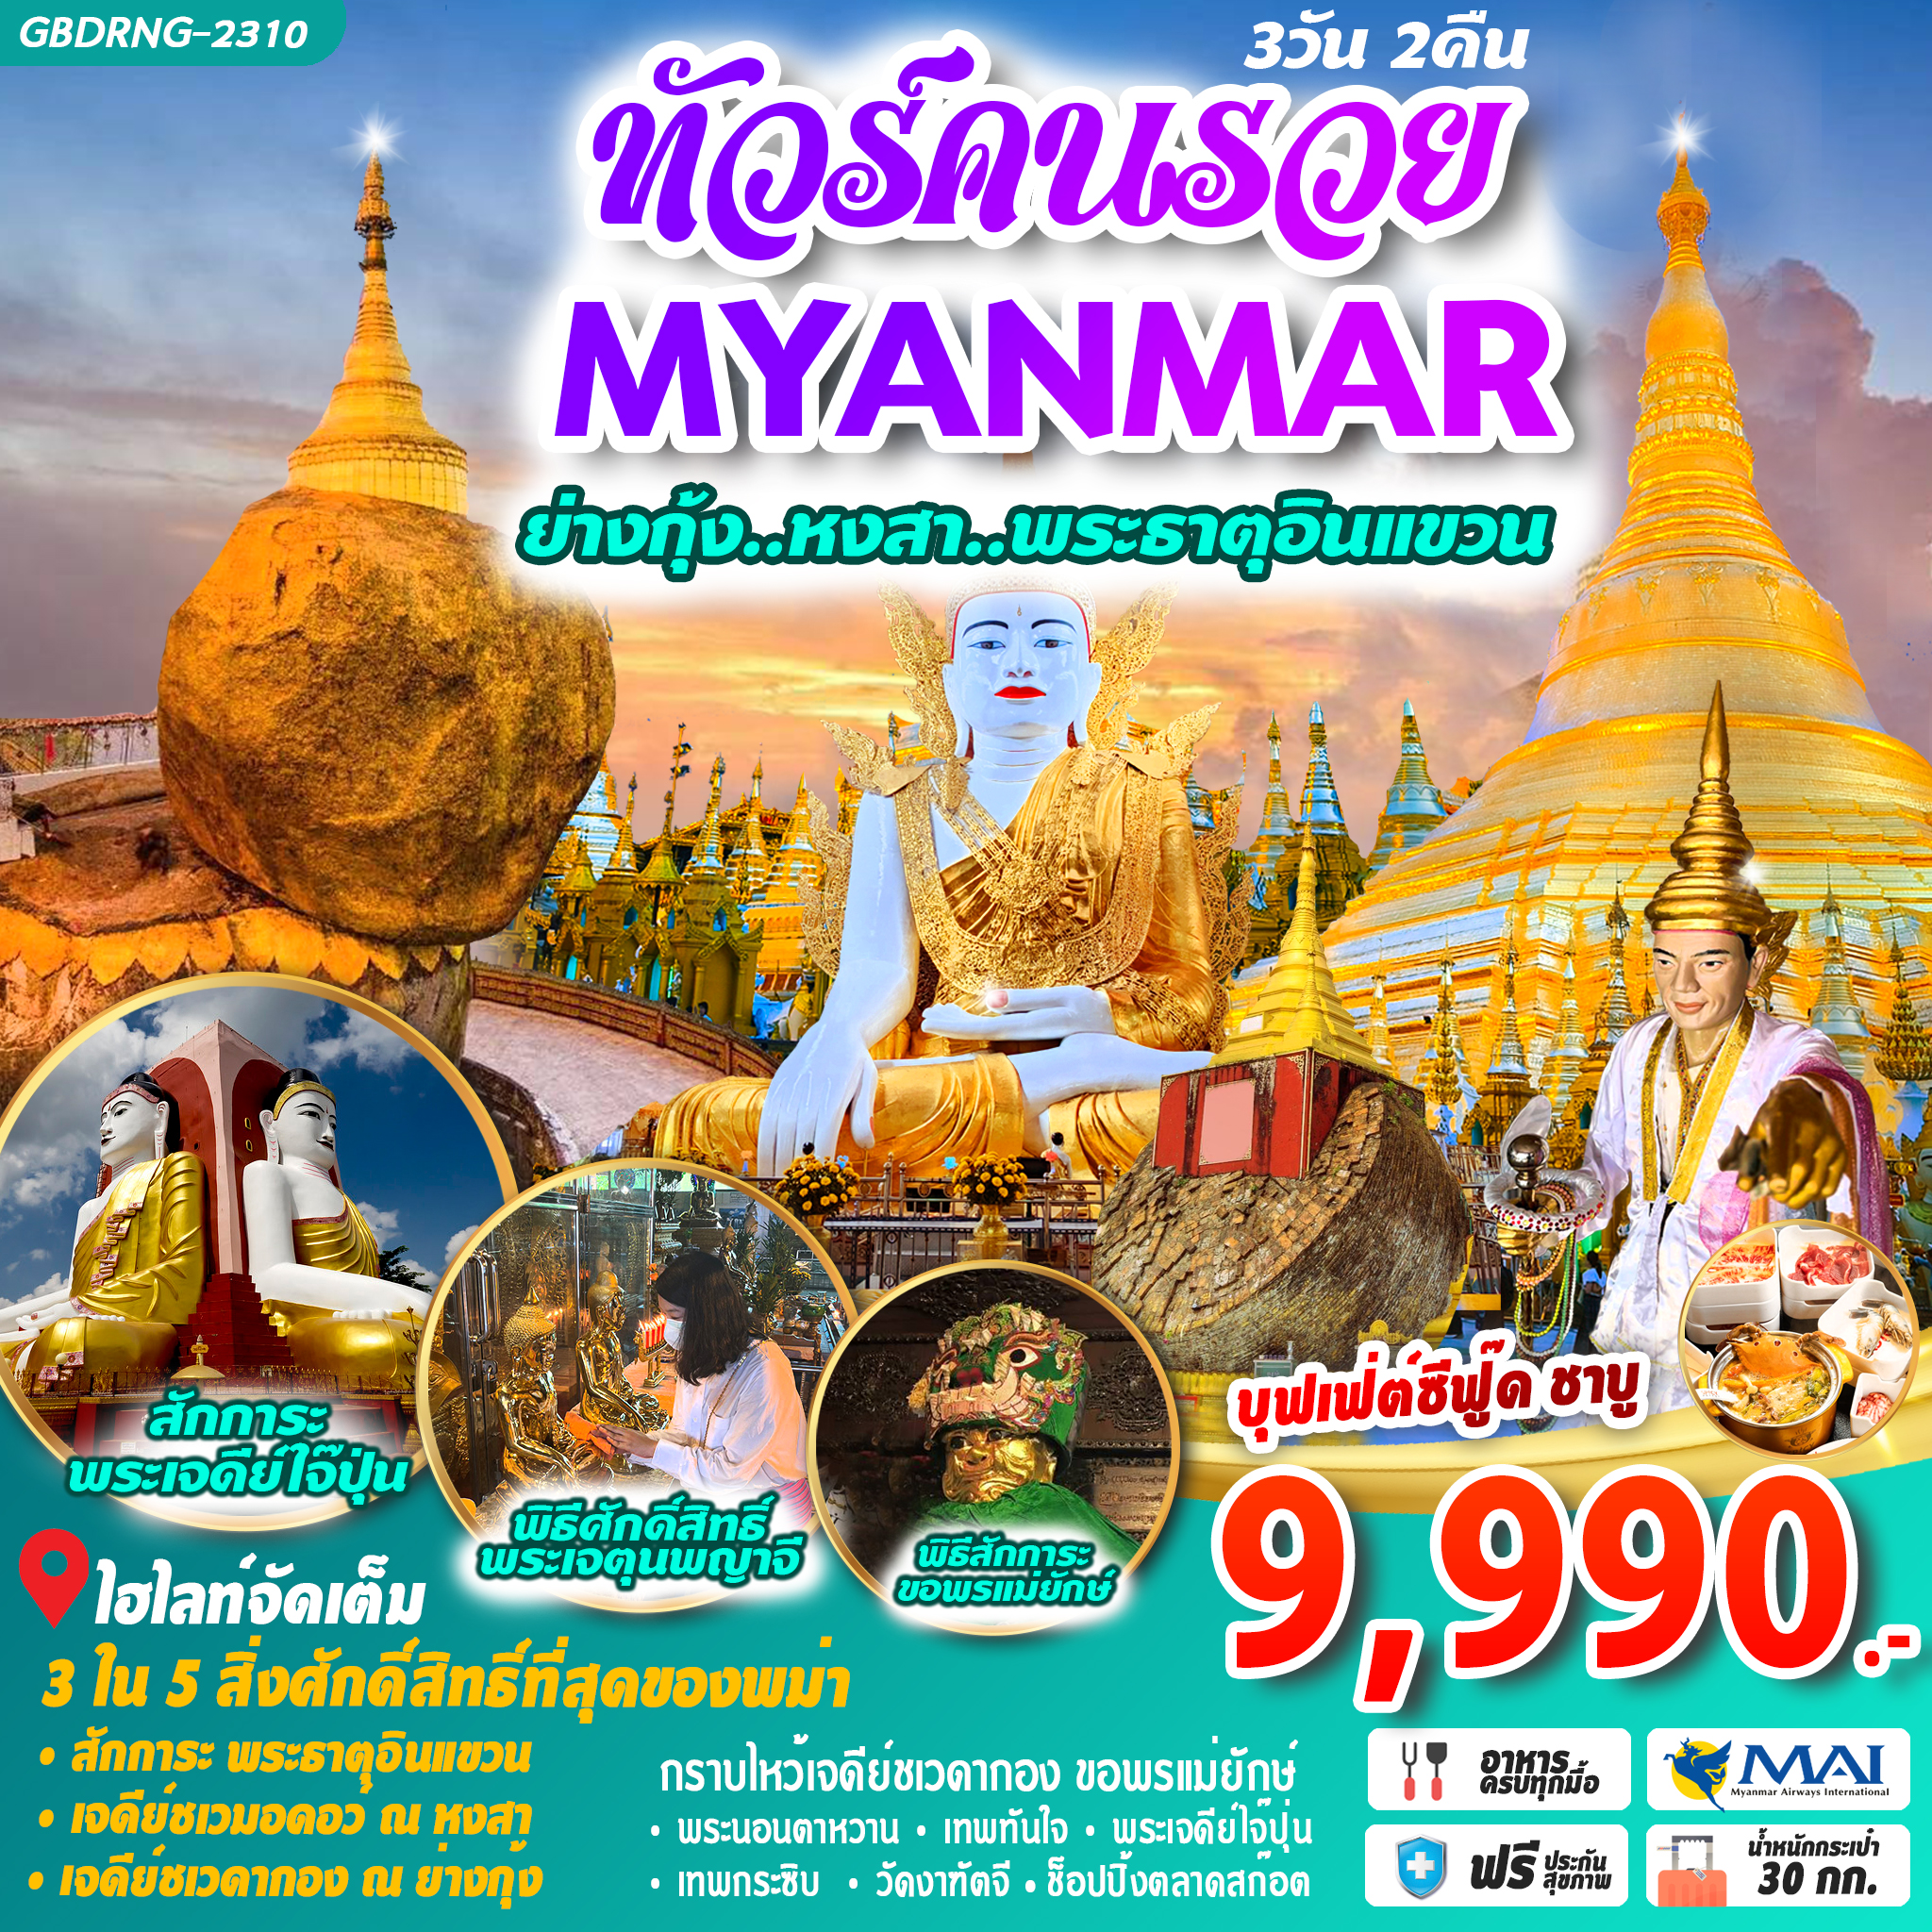 ทัวร์คนรวย พม่า ย่างกุ้ง หงสา พระธาตุอินแขวน 3D2N by 8M